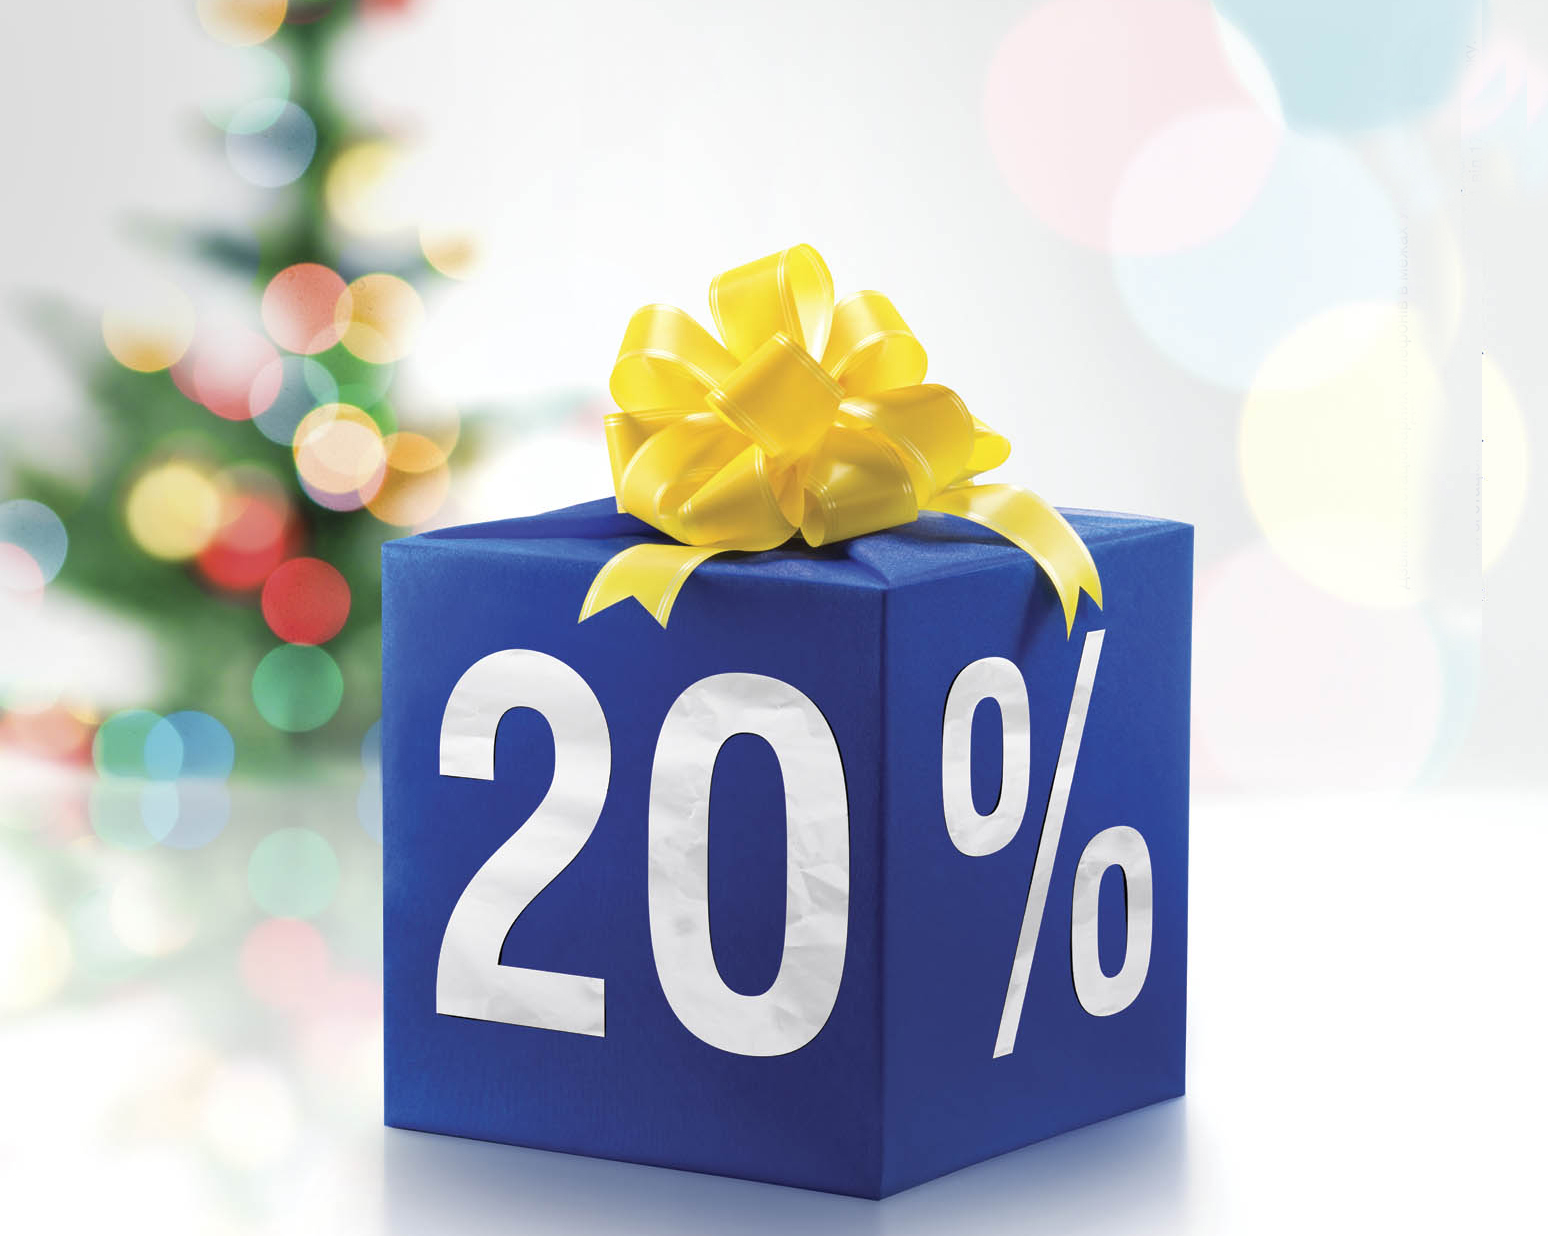 Скористайтесь шансом отримати 20% річних авансом за вкладом у гривнях на 2 місяці. Створіть собі різдвяний настрій!